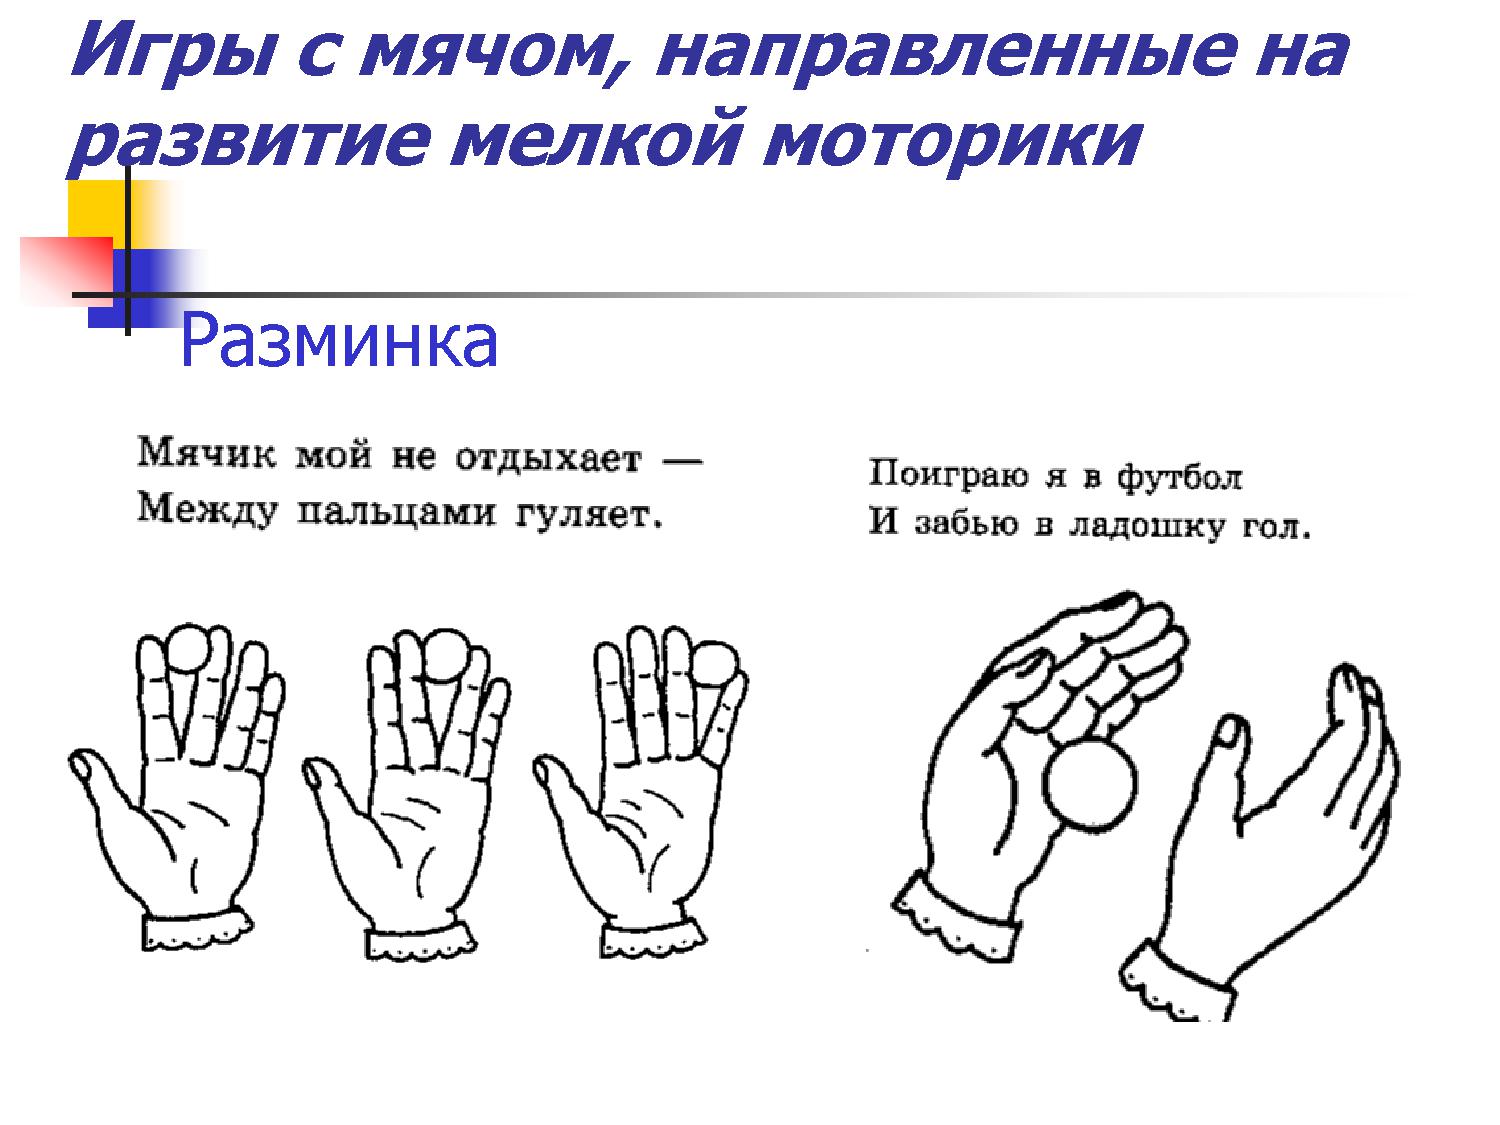 Моторика пальцев упражнения. Упражнение для развития моторики рук и пальцев. Упражнения для развития моторики у детей. Комплекс упражнений для развития мелкой моторики рук. Упражнения для мелкой моторики пальцев рук для детей.